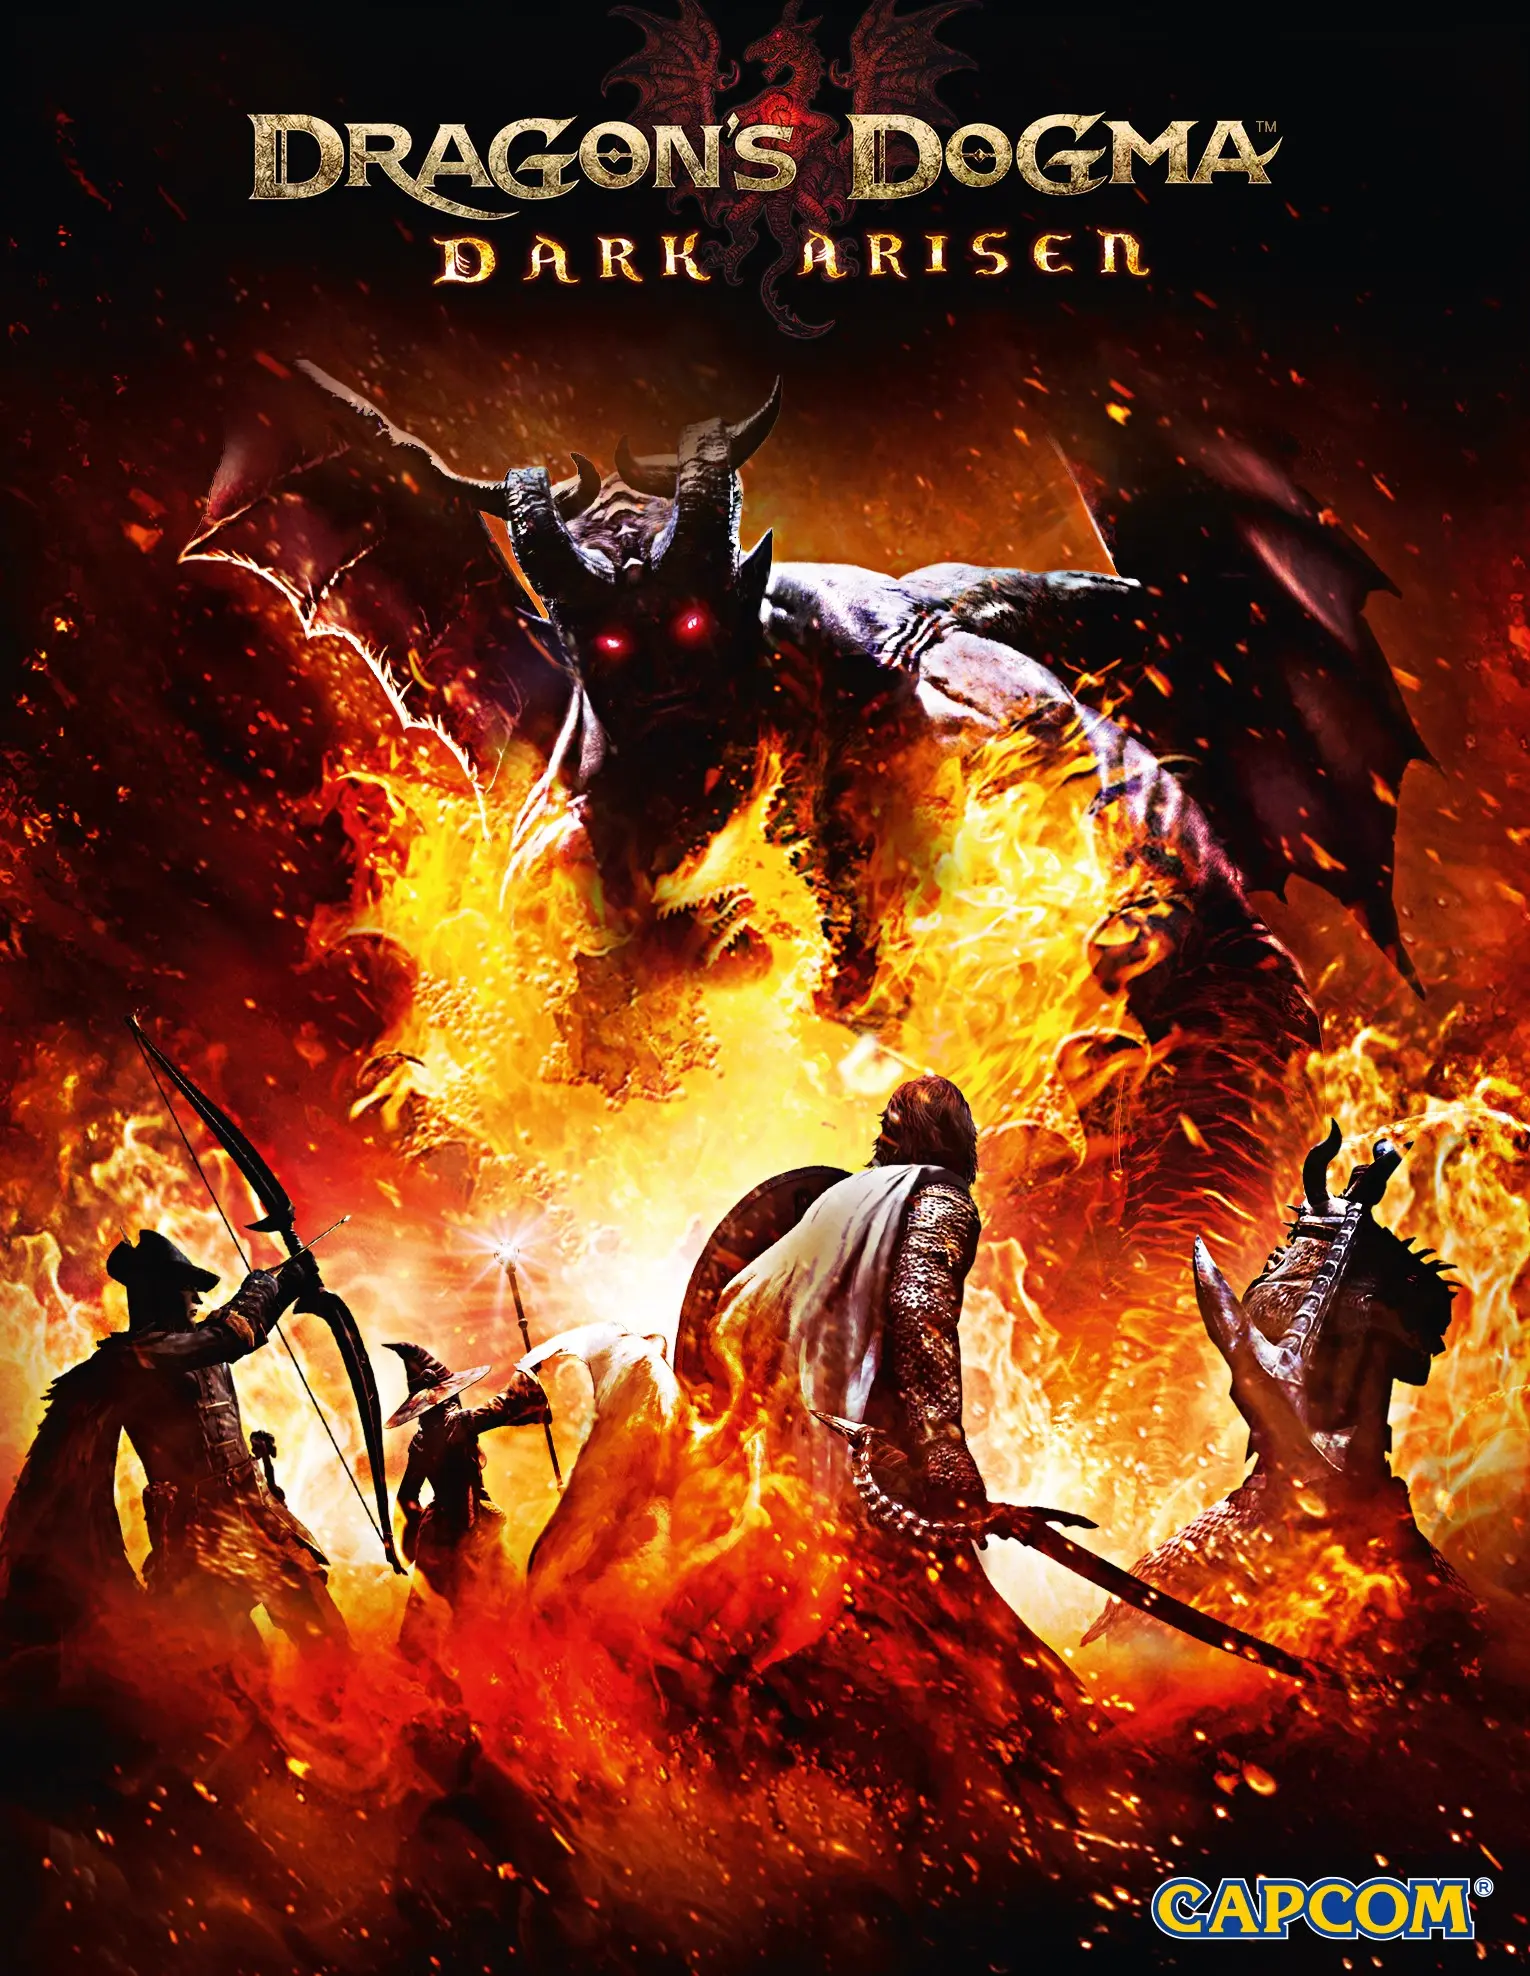 Dragon's Dogma: Dark Arisen (PC) - Steam - Digital Code